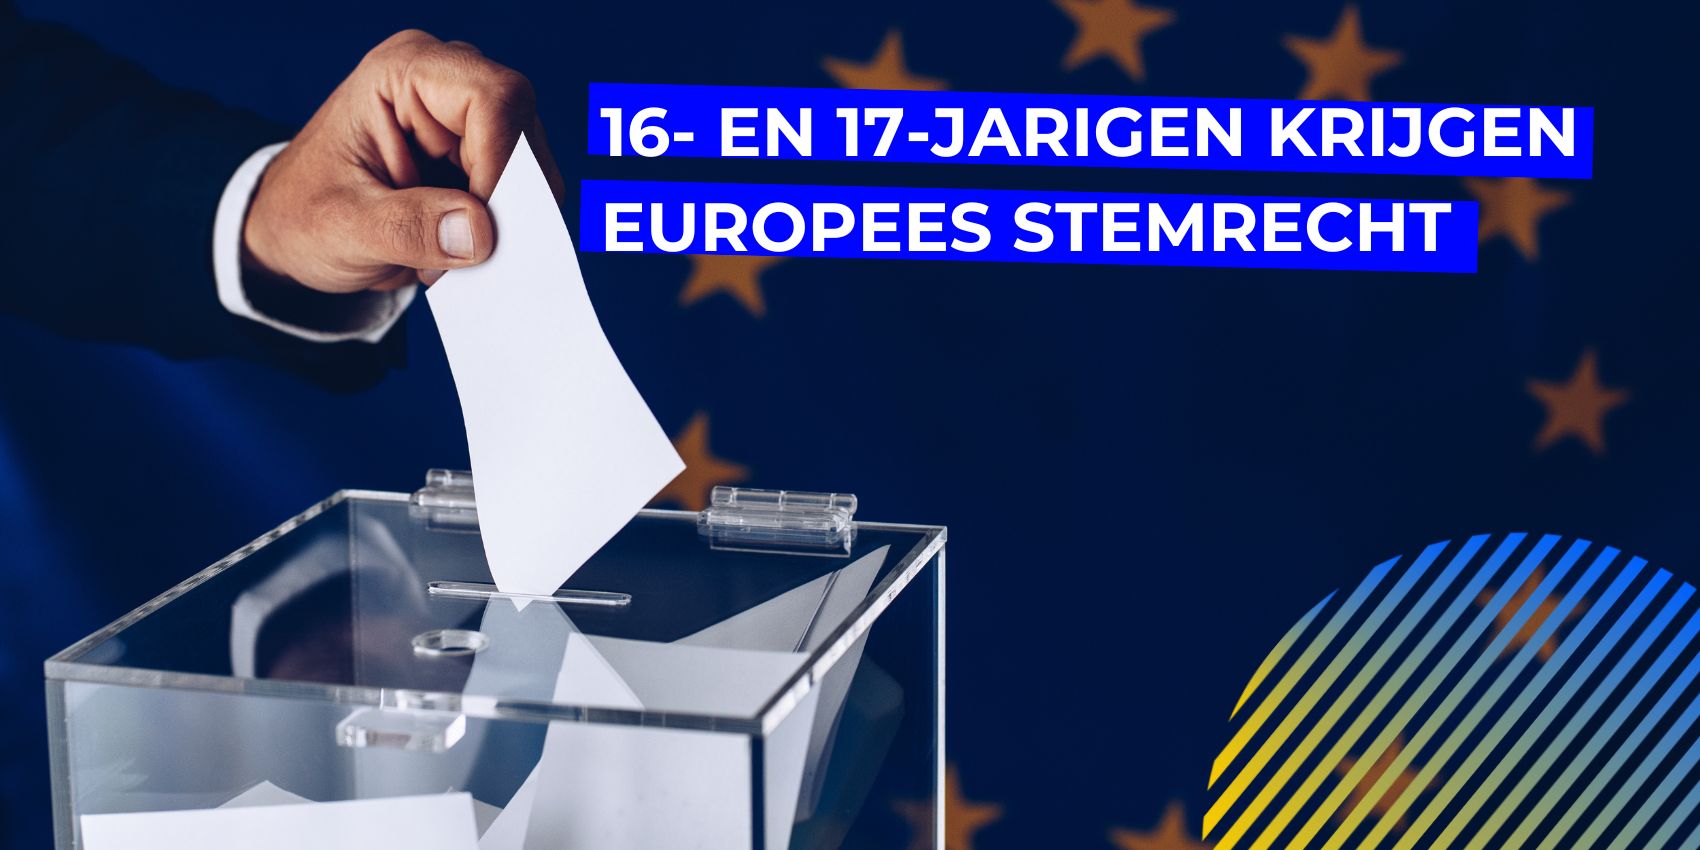 16- en 17-jarigen krijgen Europees stemrecht, 16- en 17-jarigen krijgen Europees stemrecht